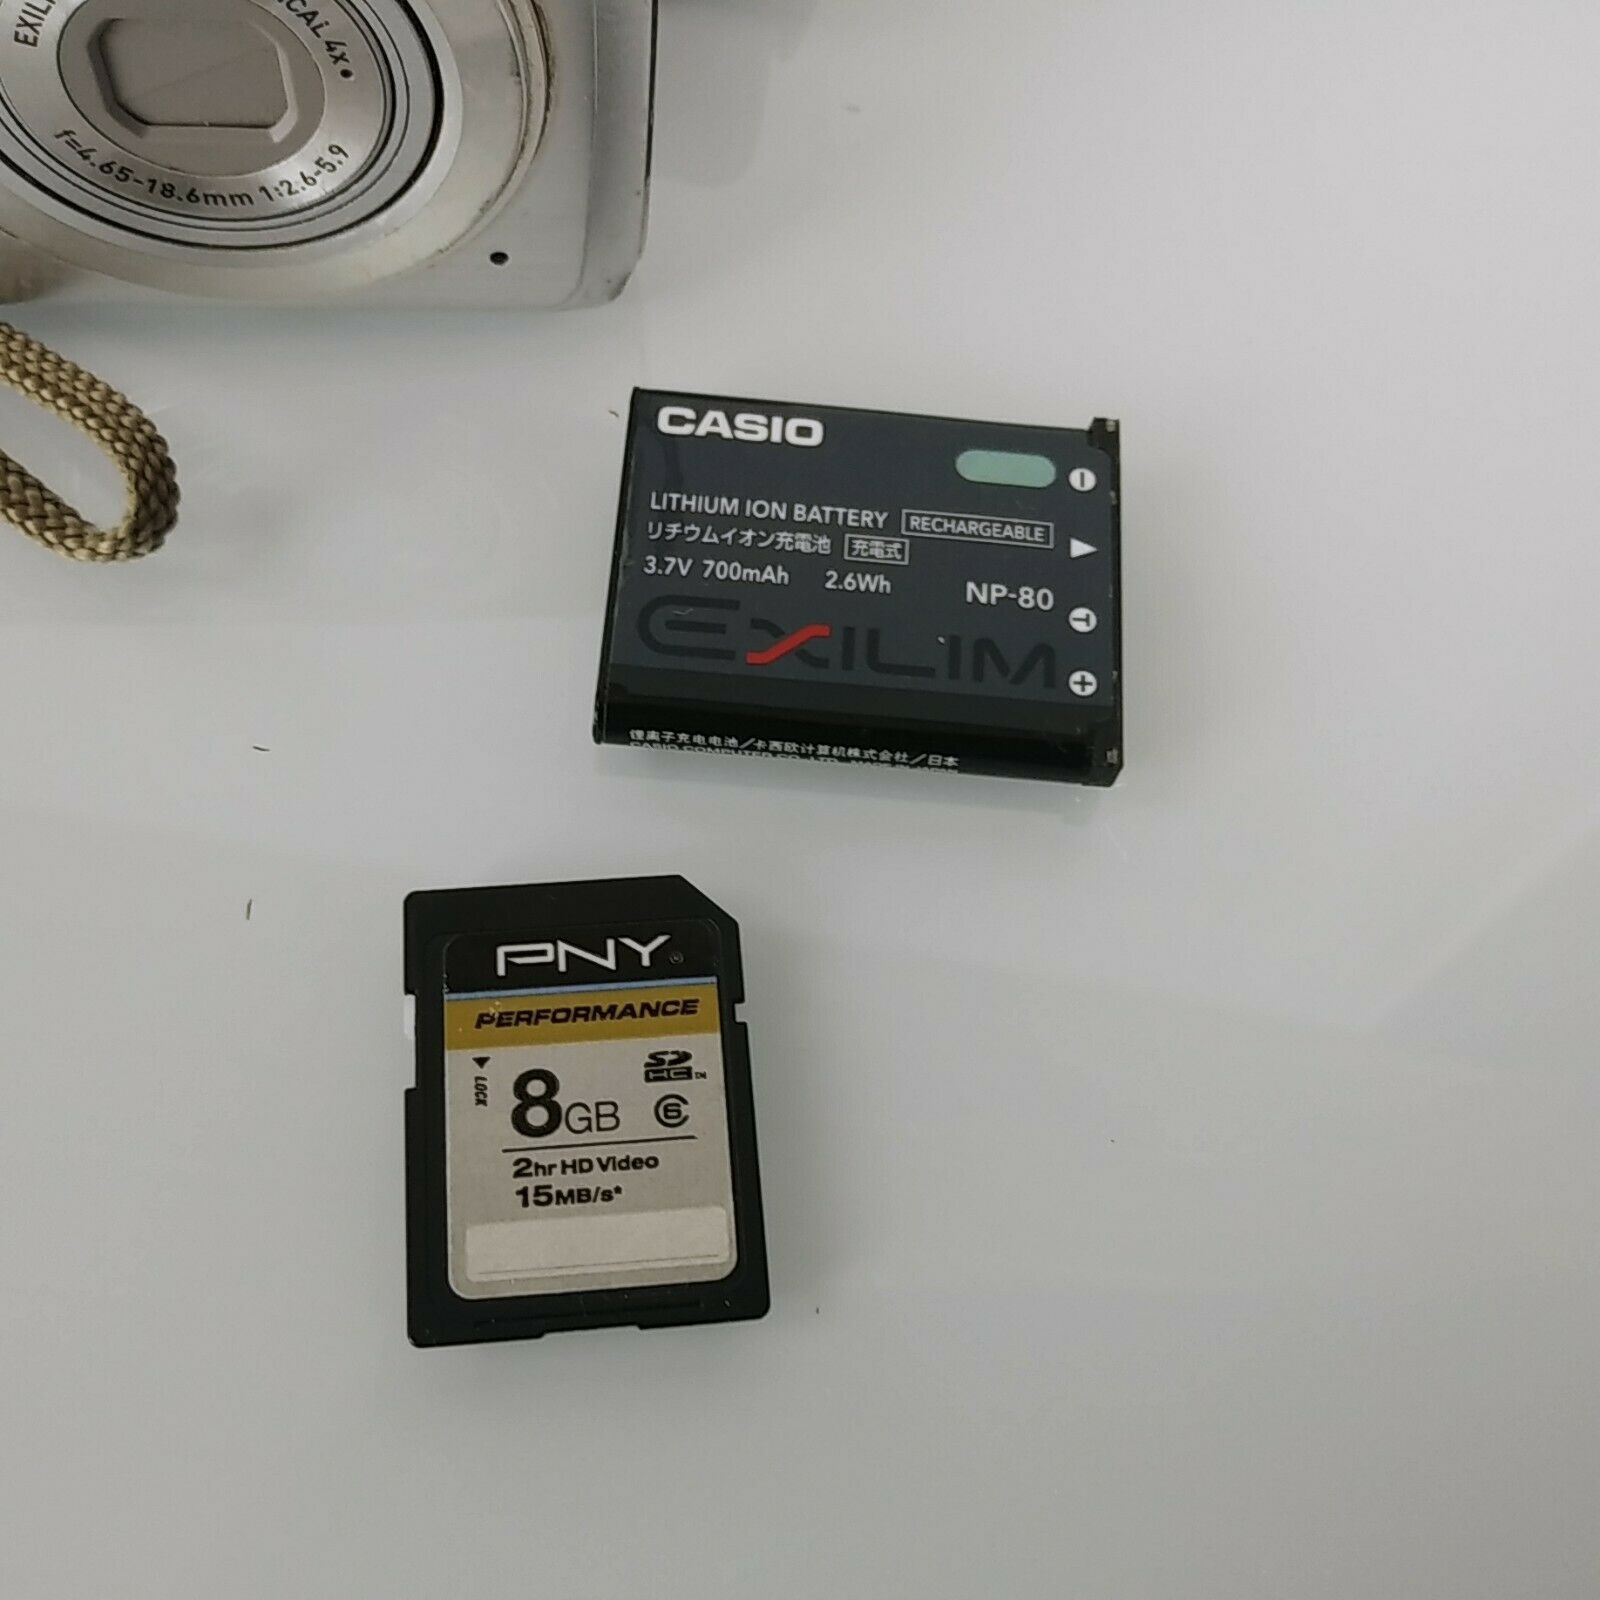 NEW 8Gb Genuine Patriot Memory Card for CASIO EXILIM EX-Z90 Digital camera